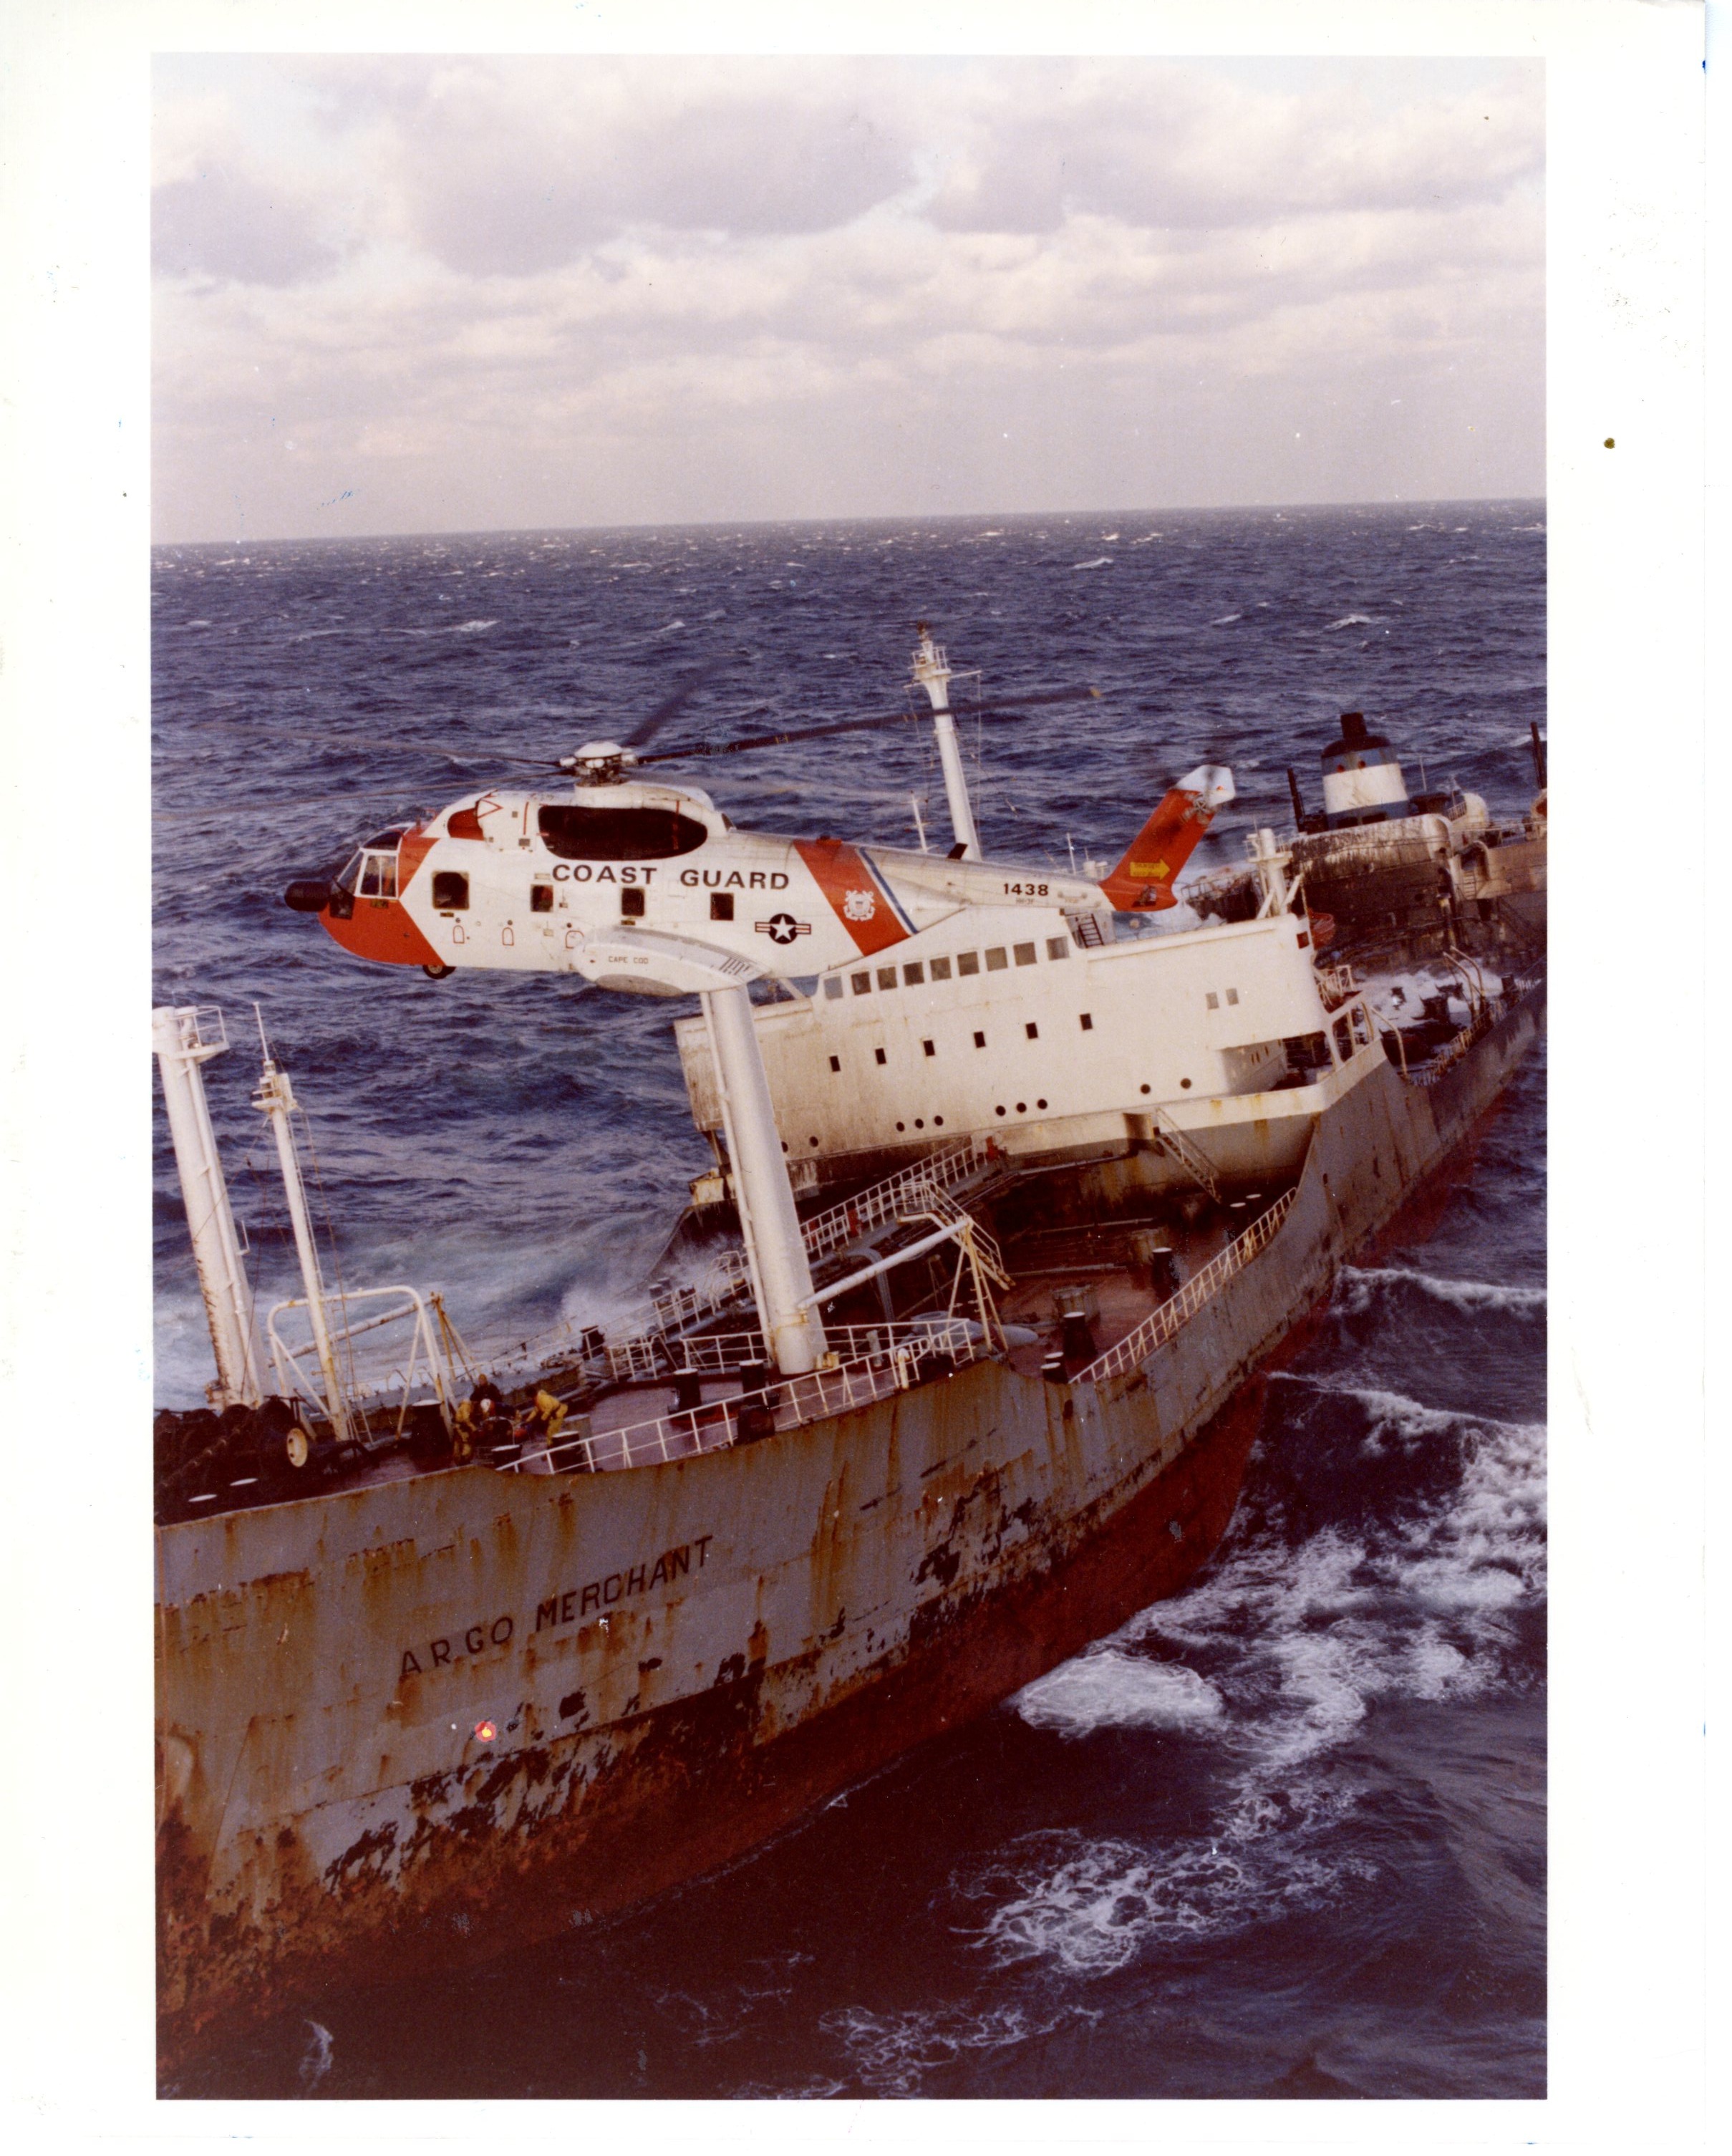 nantucket light ship wreck